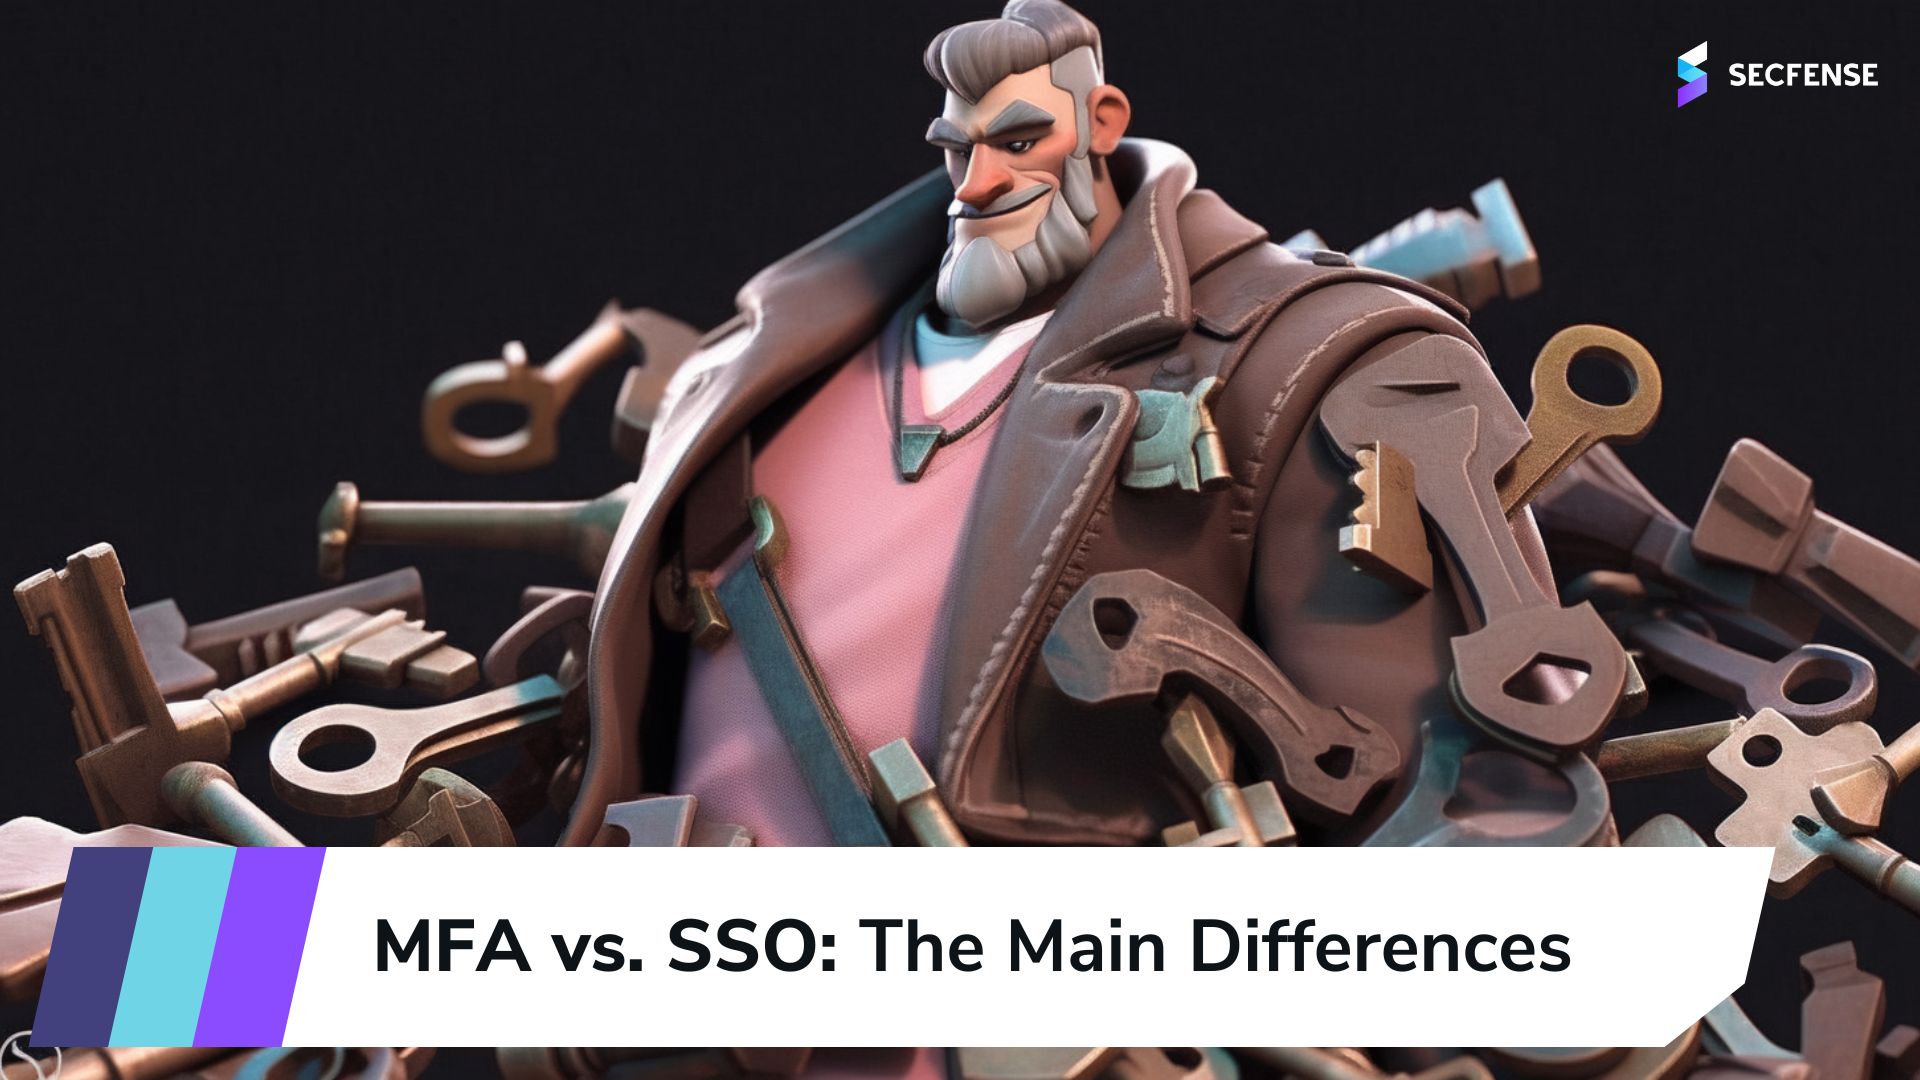 MFA vs. SSO: The Main Differences